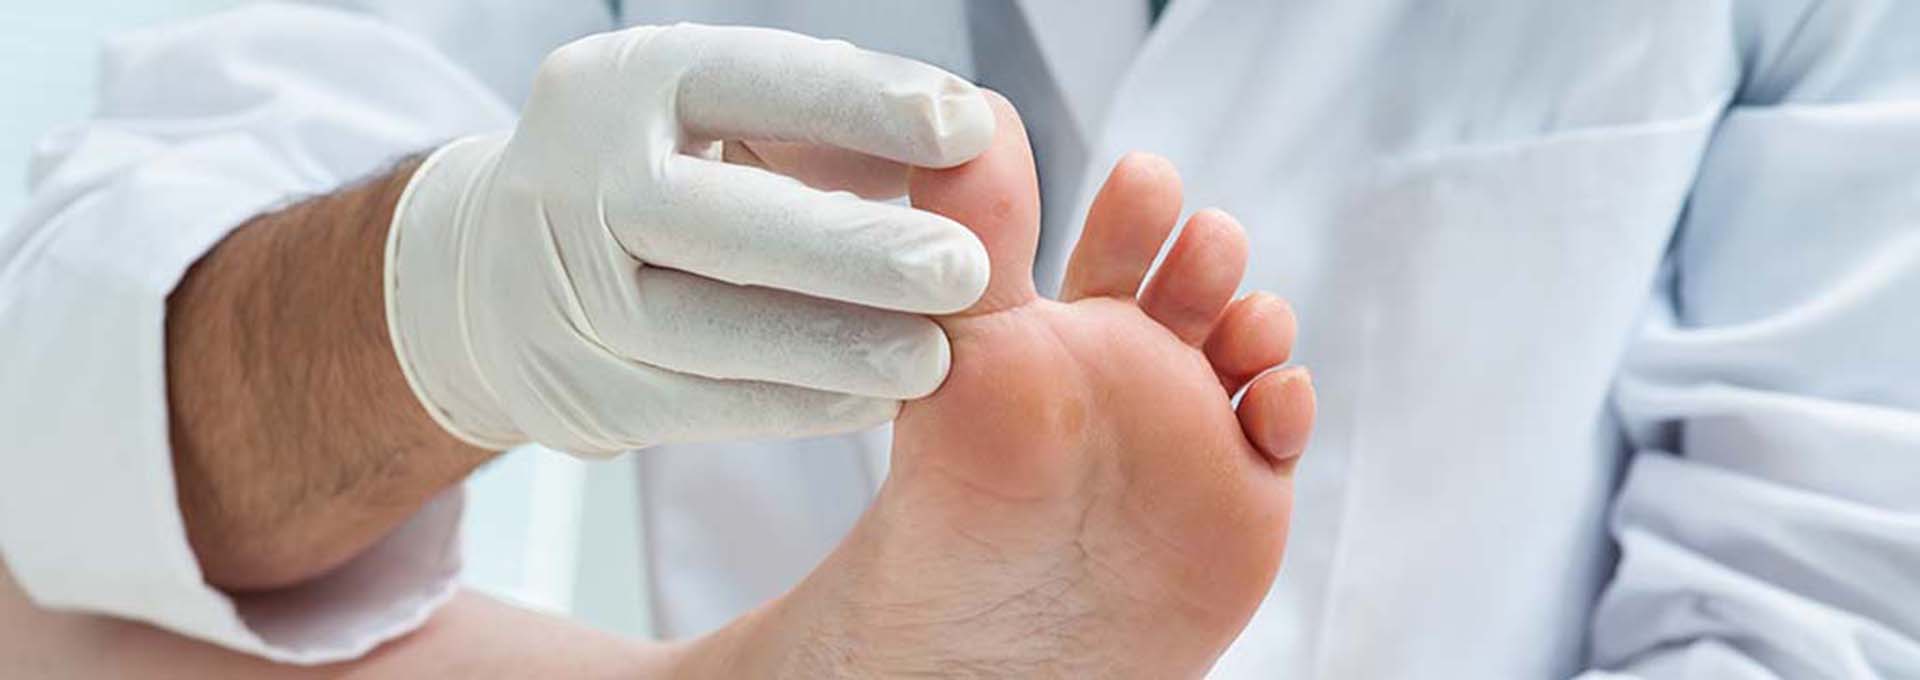 Prevenzione malattie del piede | Podolife.com